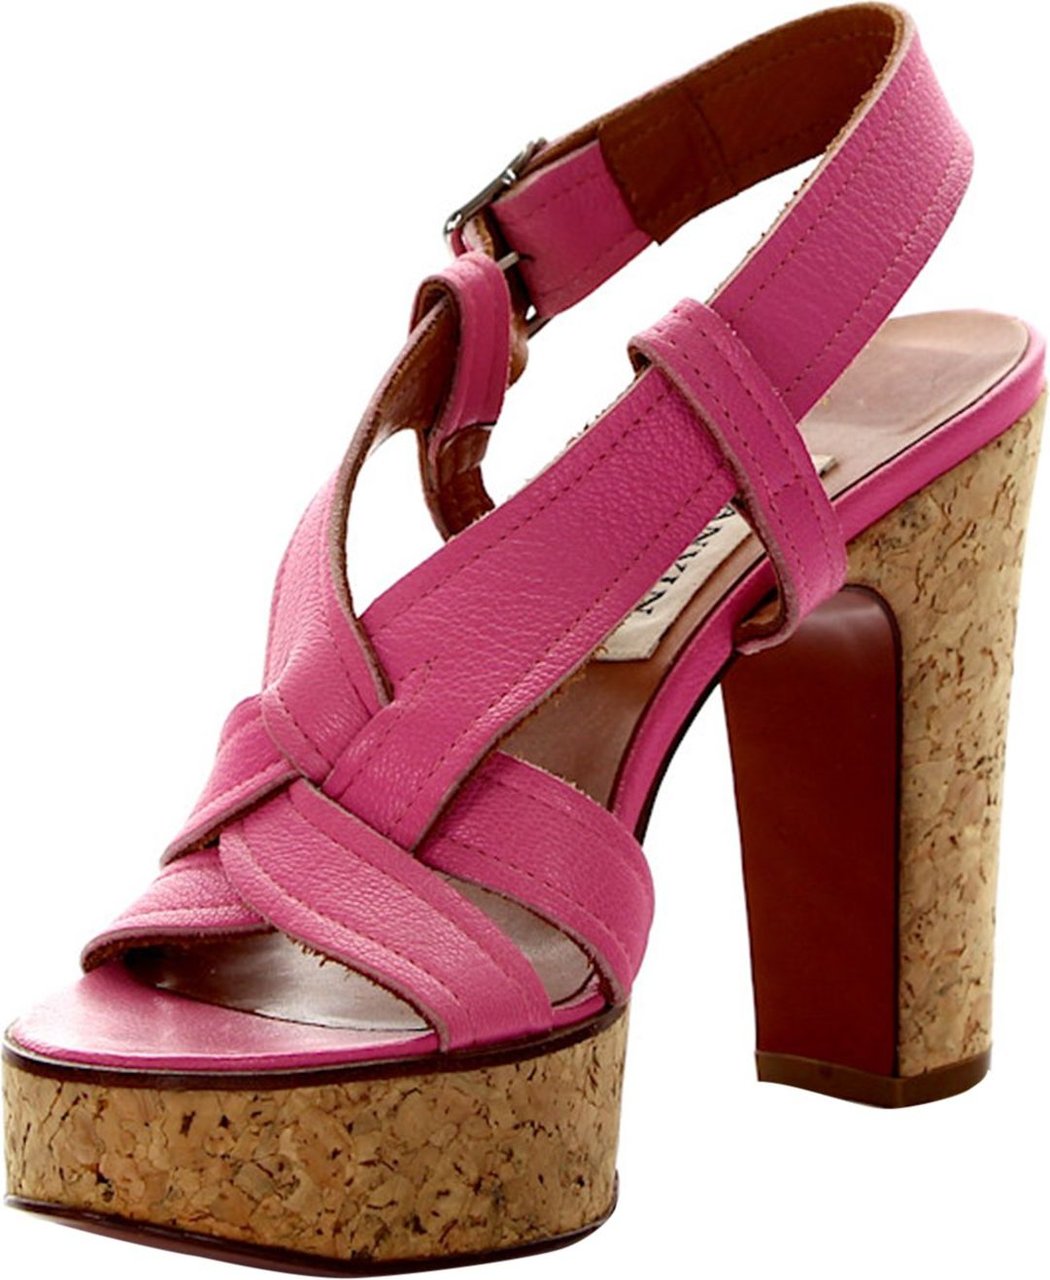 Lanvin Women Platform Sandals - TRAVIATA Roze